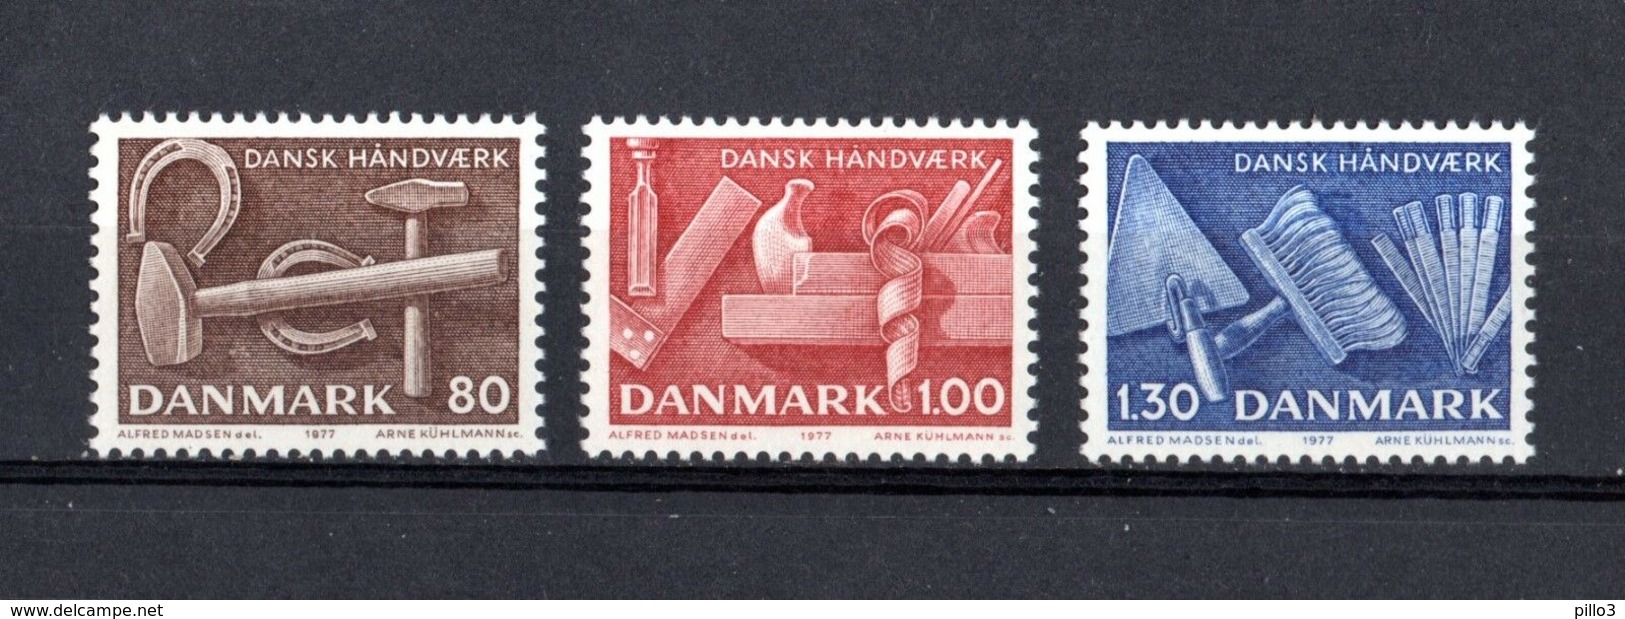 DANMARK :  Utensili Artigianato Danese - 3 Val. MNH**  Del  22.09.1977 - Nuovi